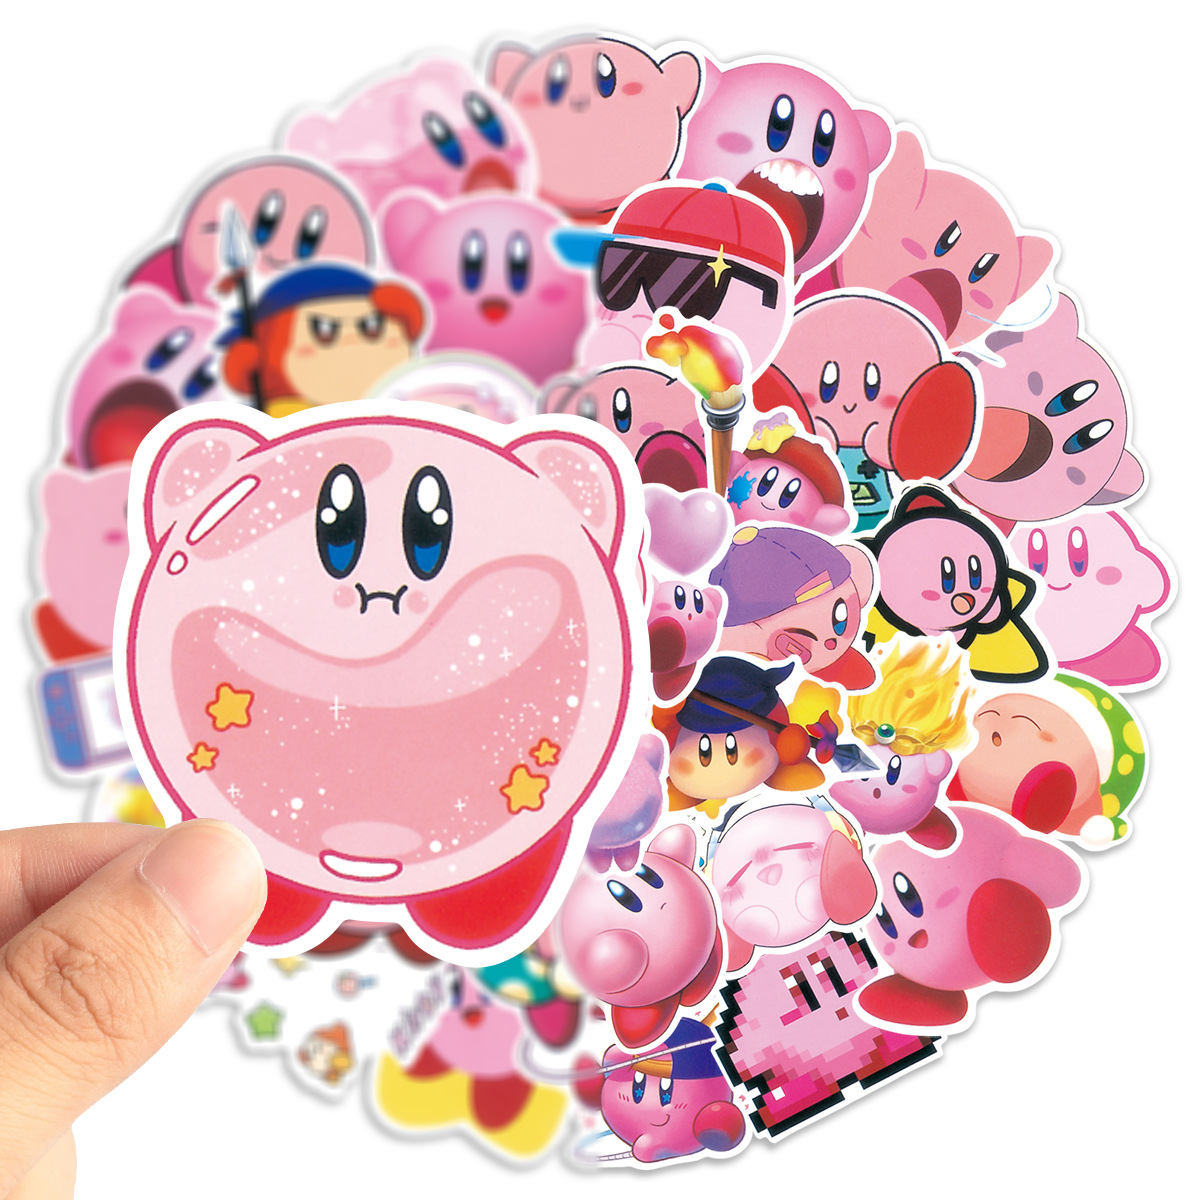 Kirby anime waterproof stickers (52pcs a set)